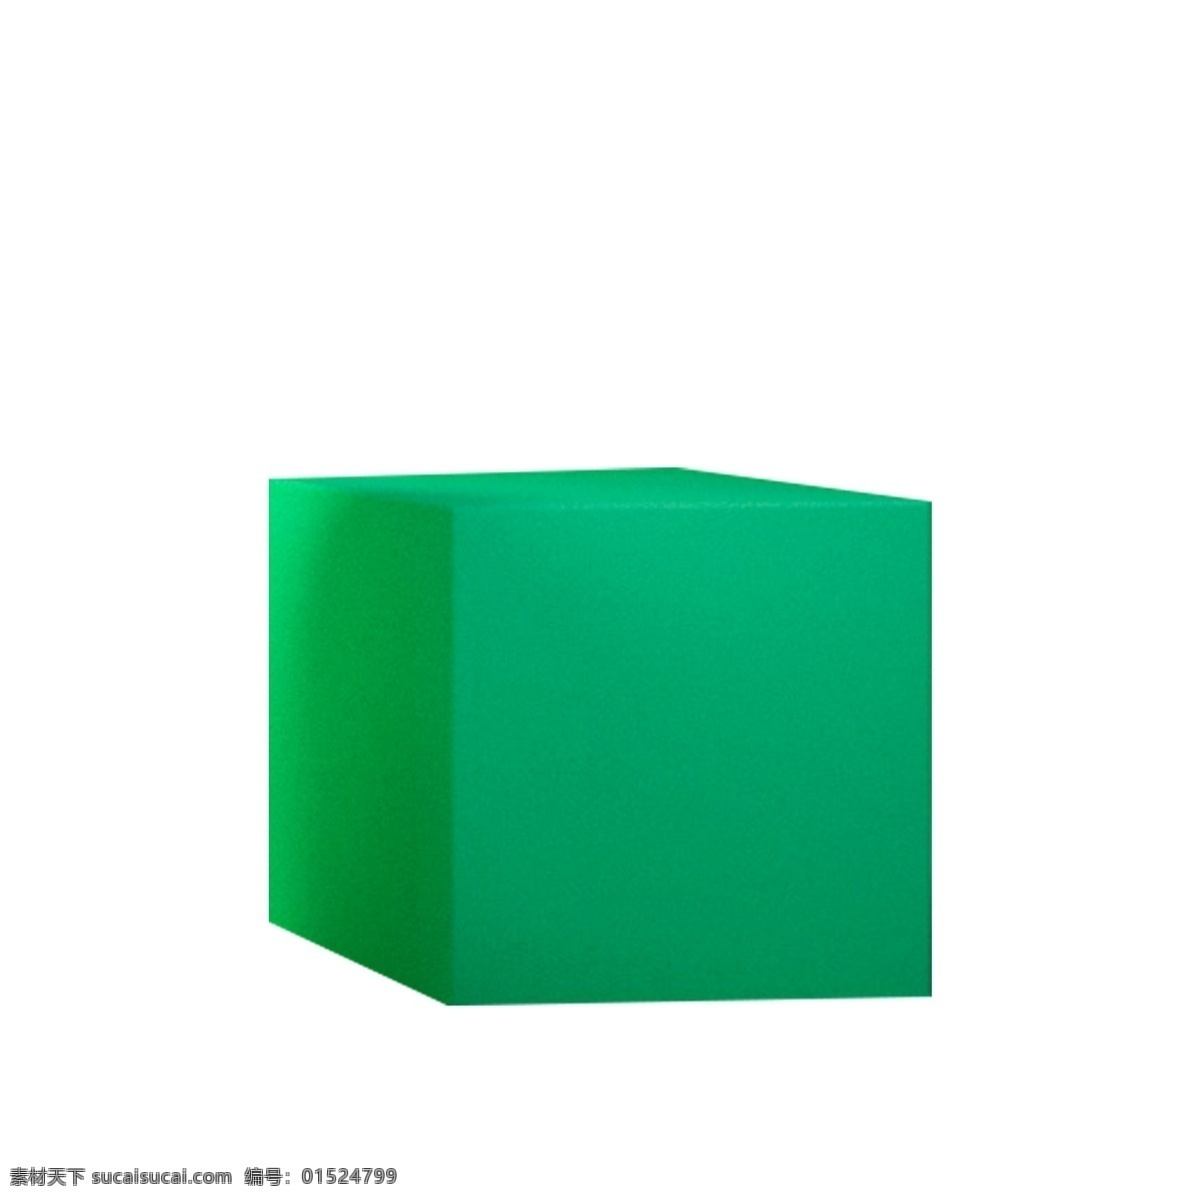 绿色 立方体 免 抠 图 3d台面 卡通图案 卡通插画 几何立体方体 方块 立体时尚方块 绿色的立方体 免抠图